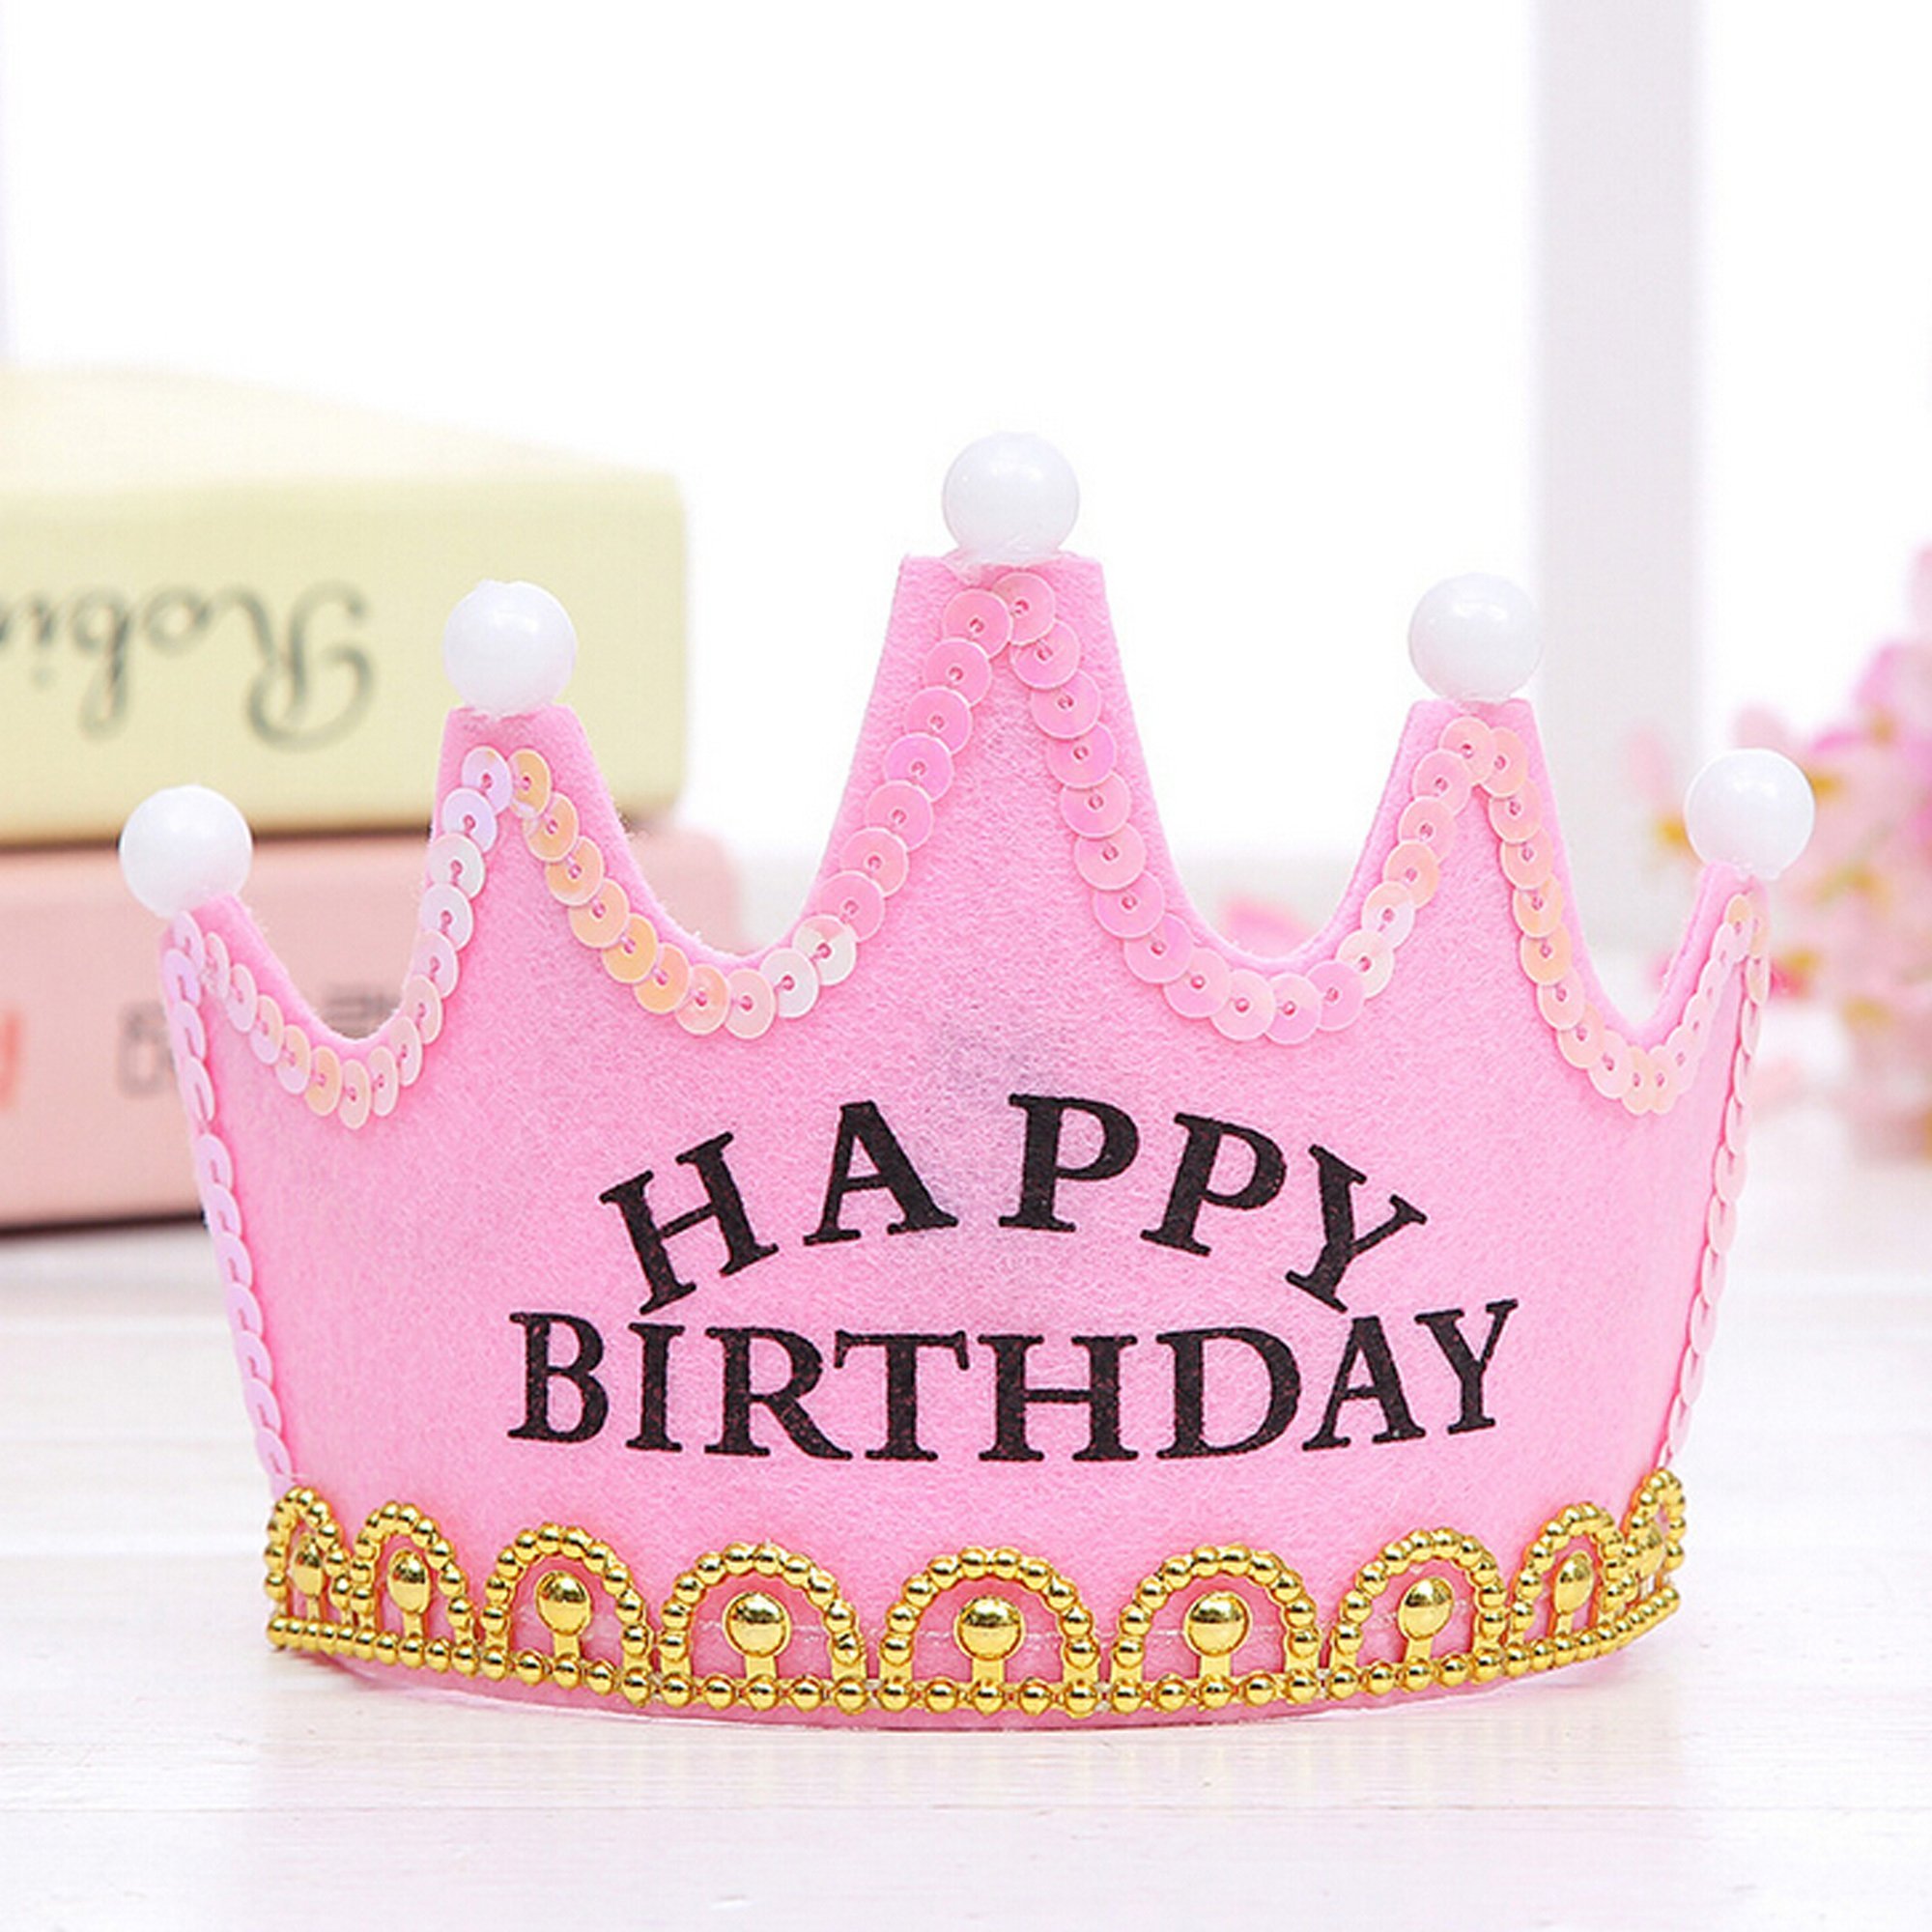 Самой маленькой принцессе. День рождения принцессы. С днём рождения принцесу. С днем рождения принцессц. Сслнем рождения ,принцесса.